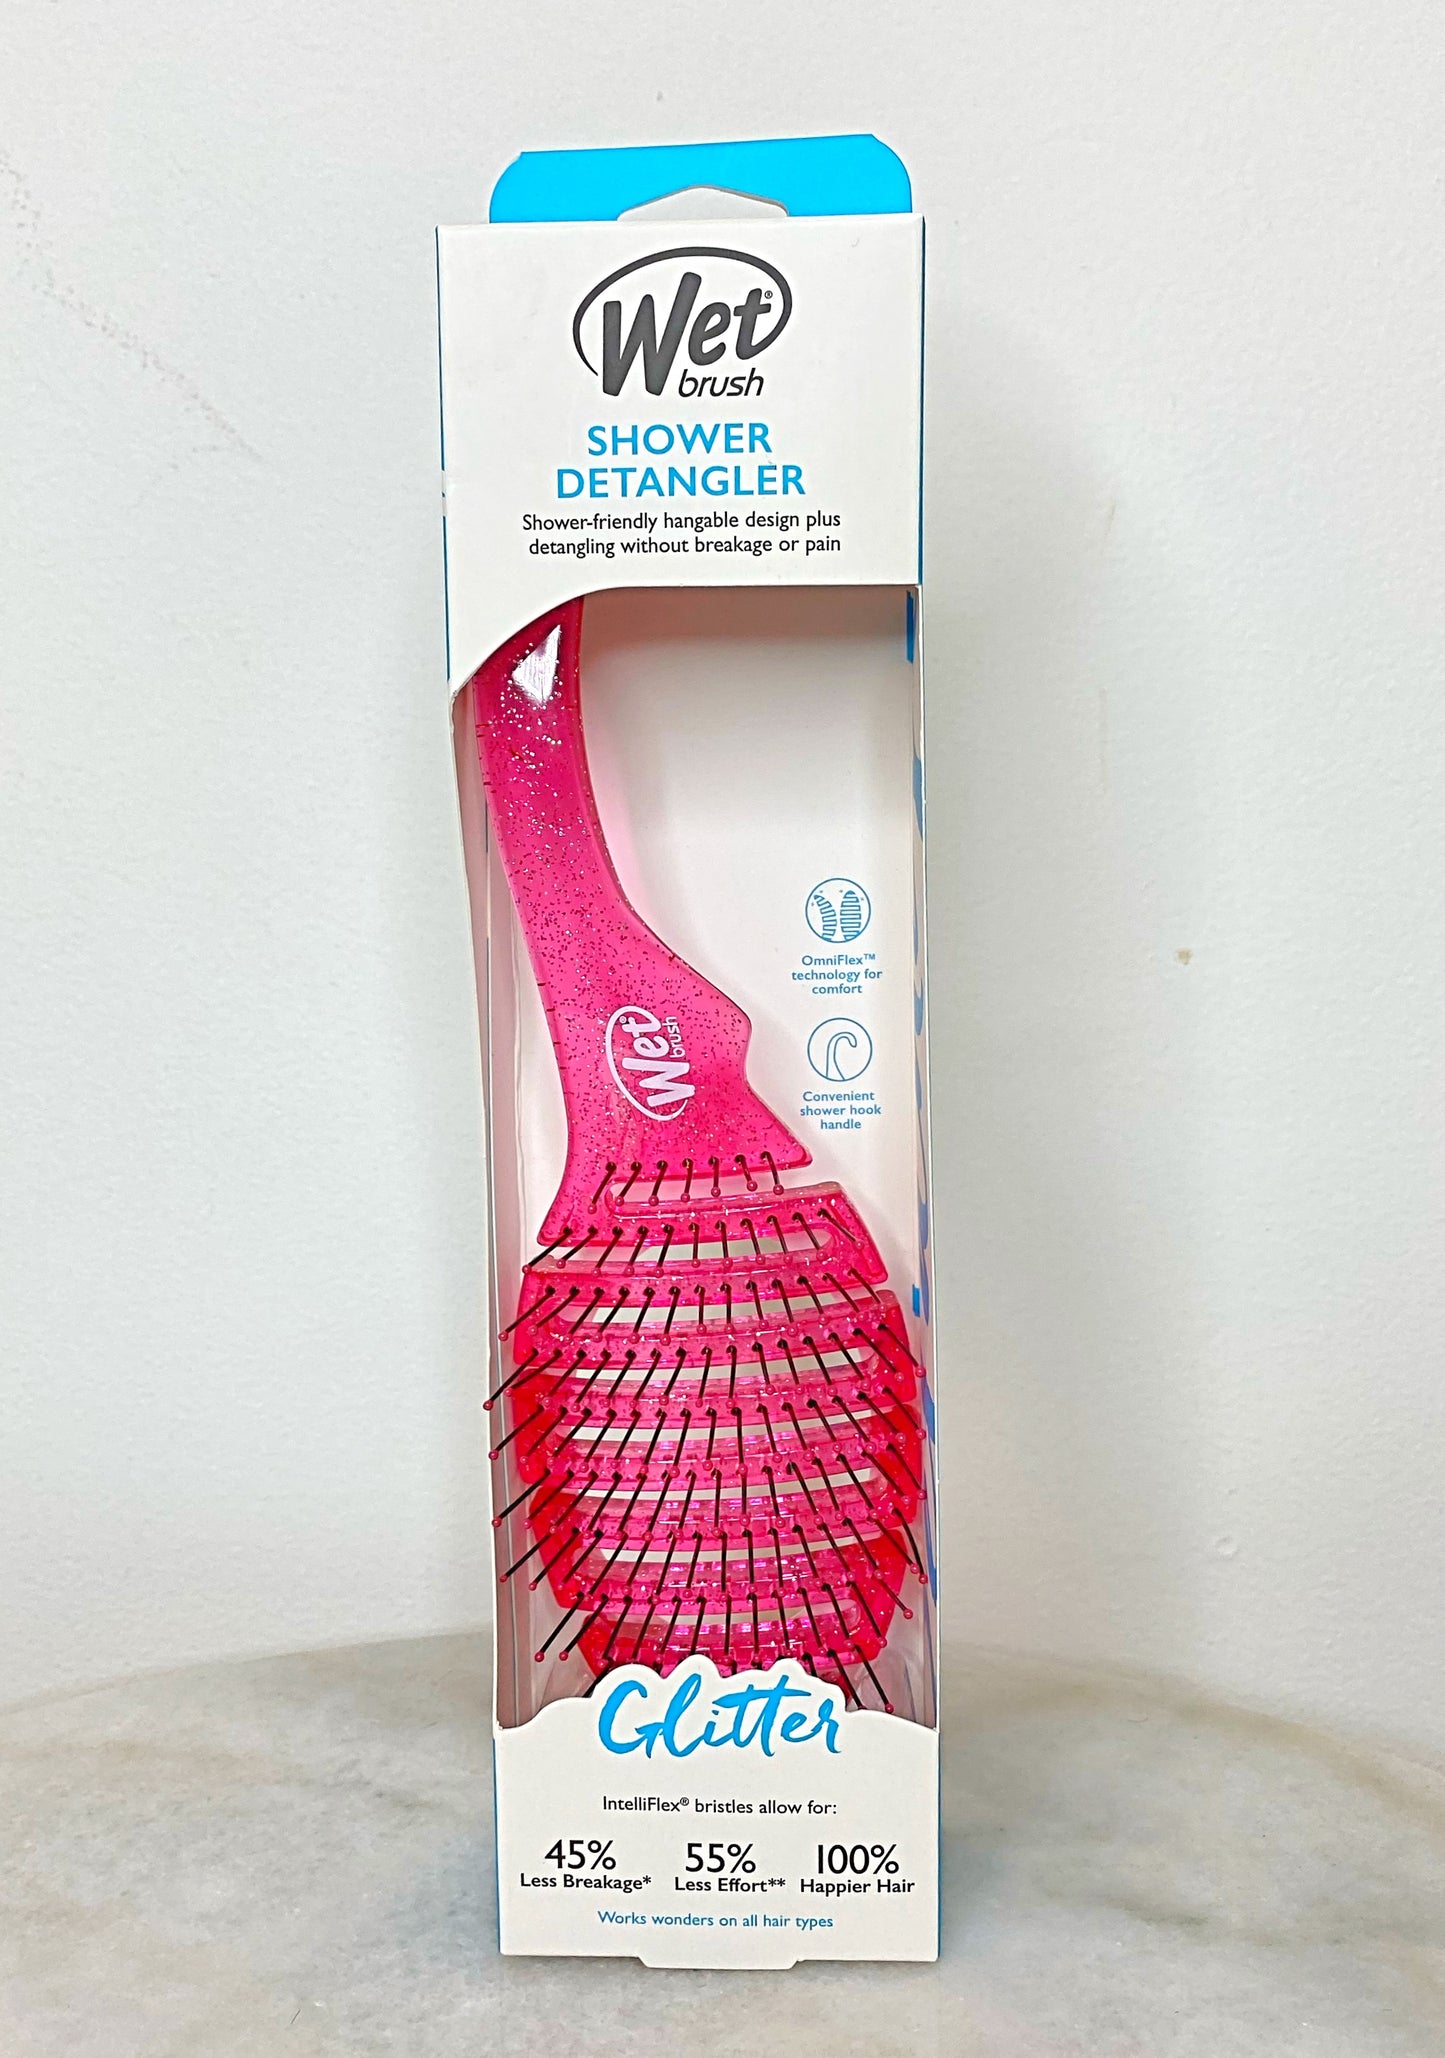 The Wet Brush Detangler